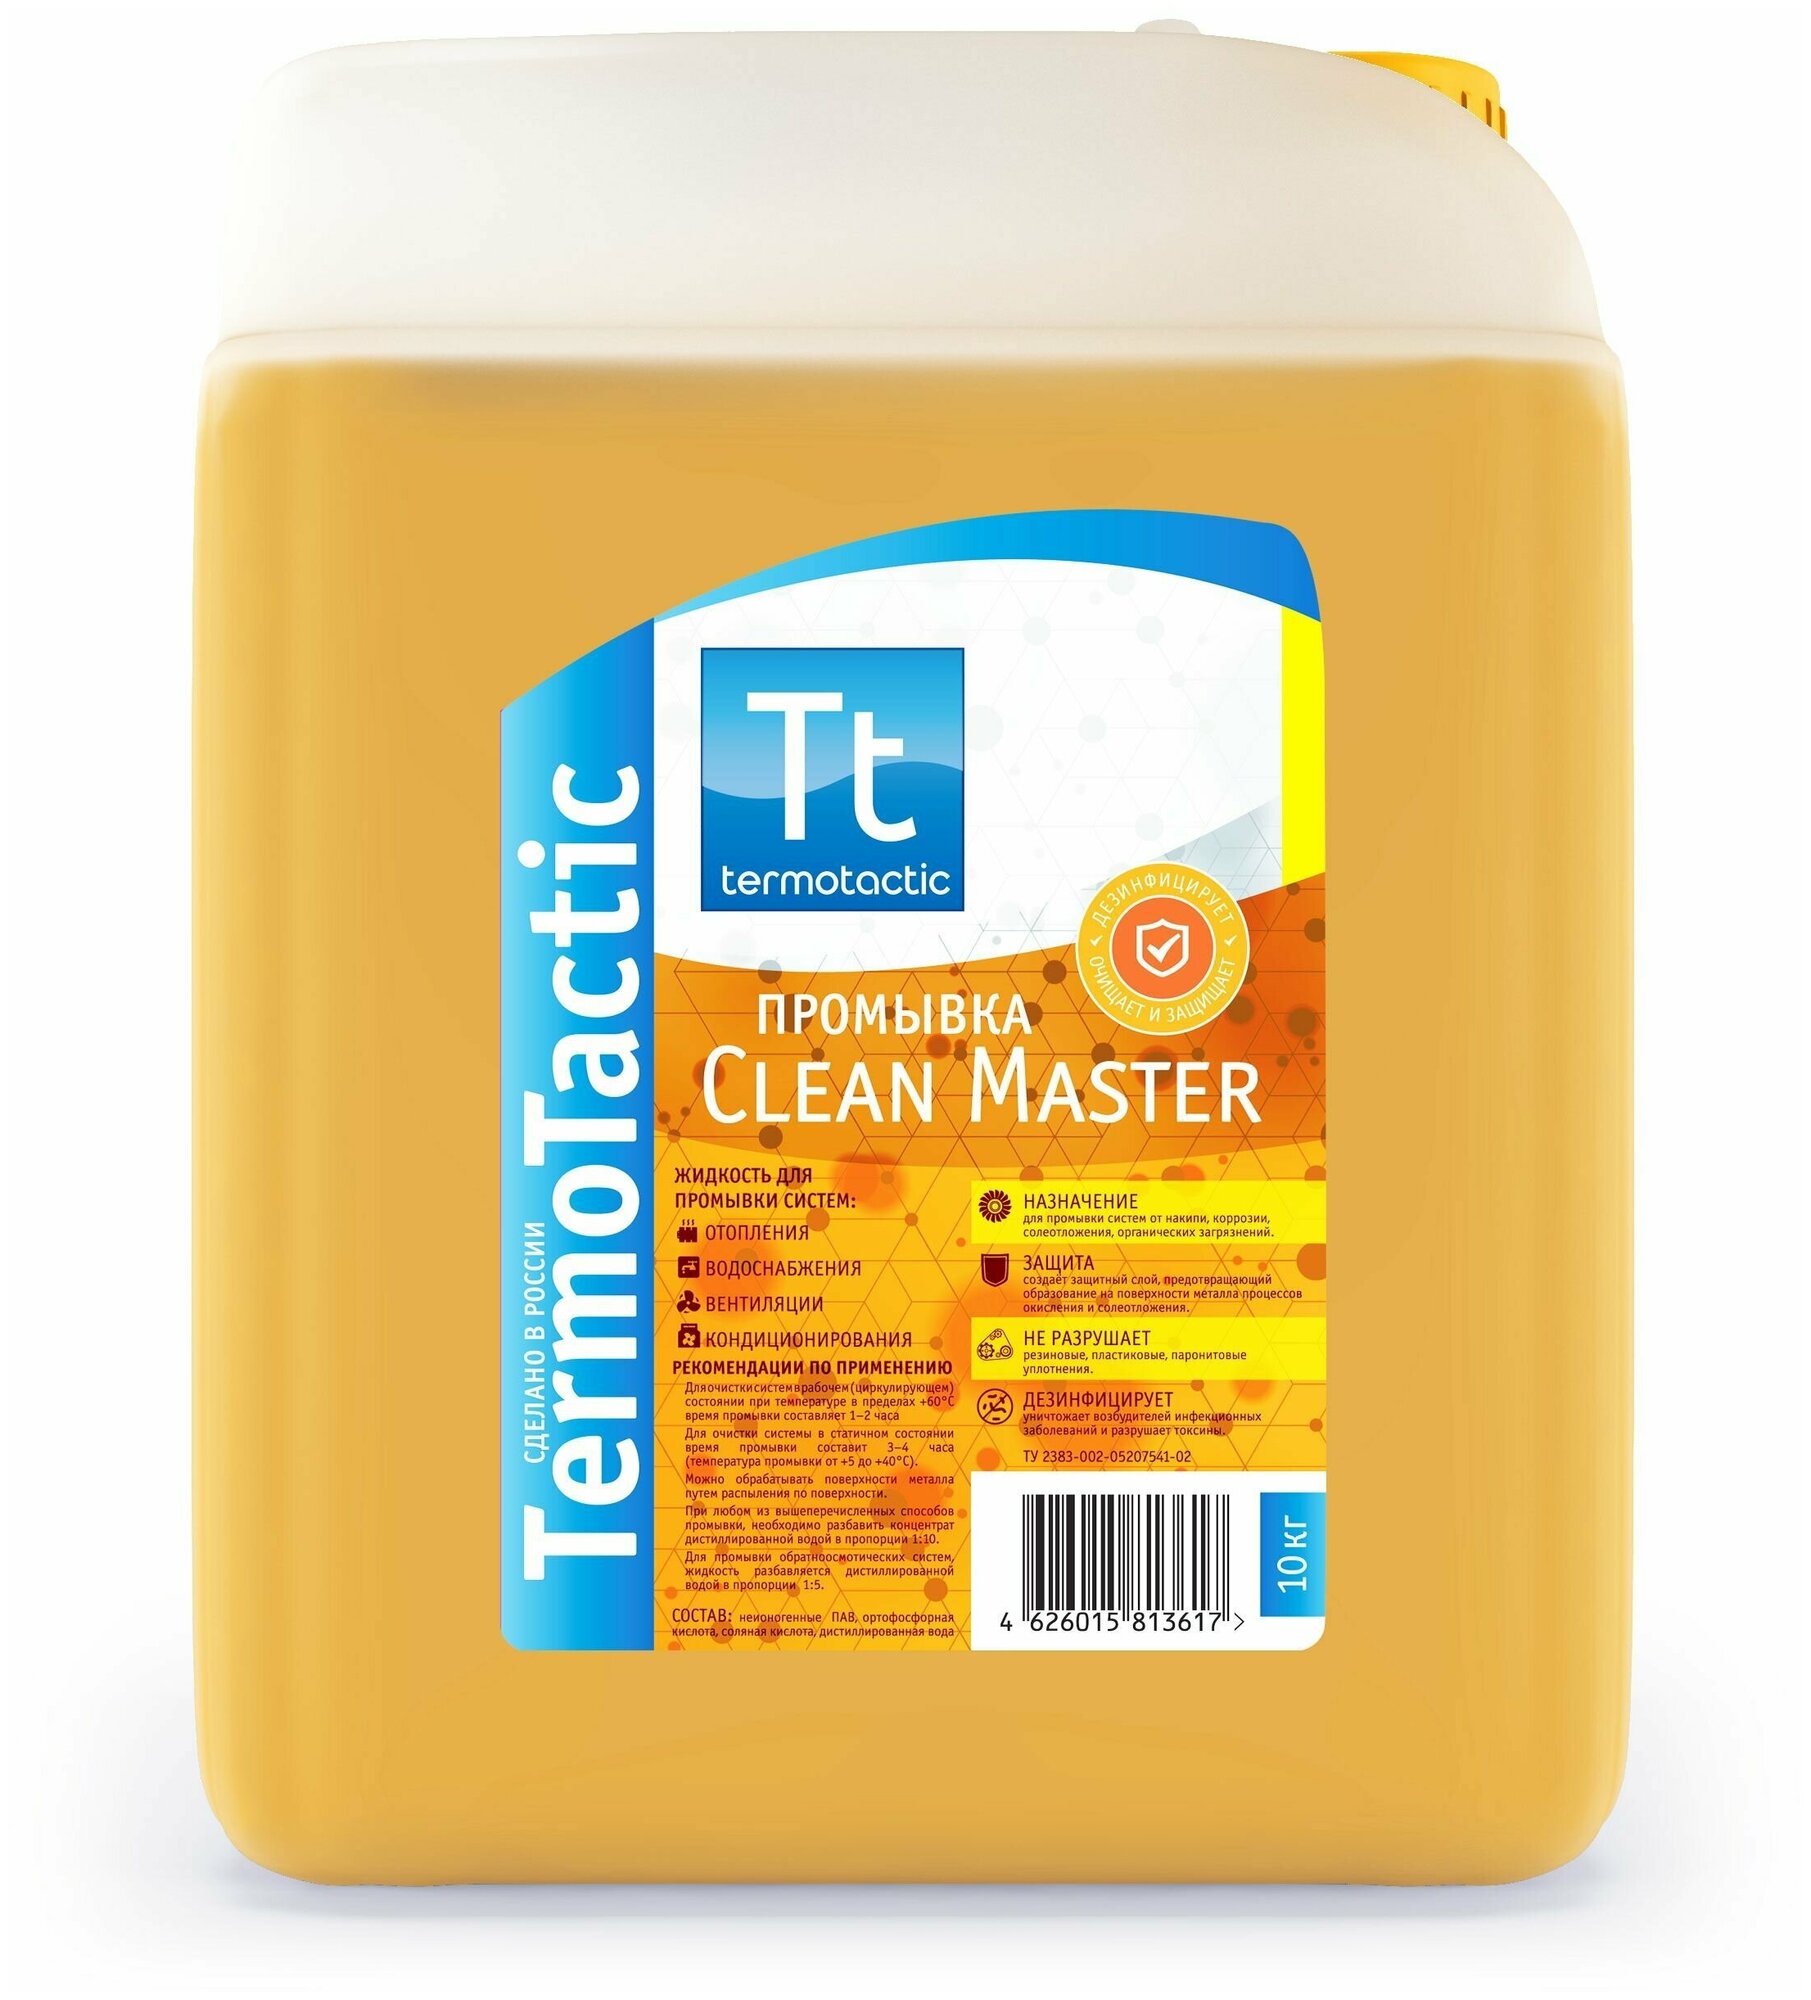 Жидкость для промывки систем отопления TermoTactic "Clean Master", 10 литров (концентрат)